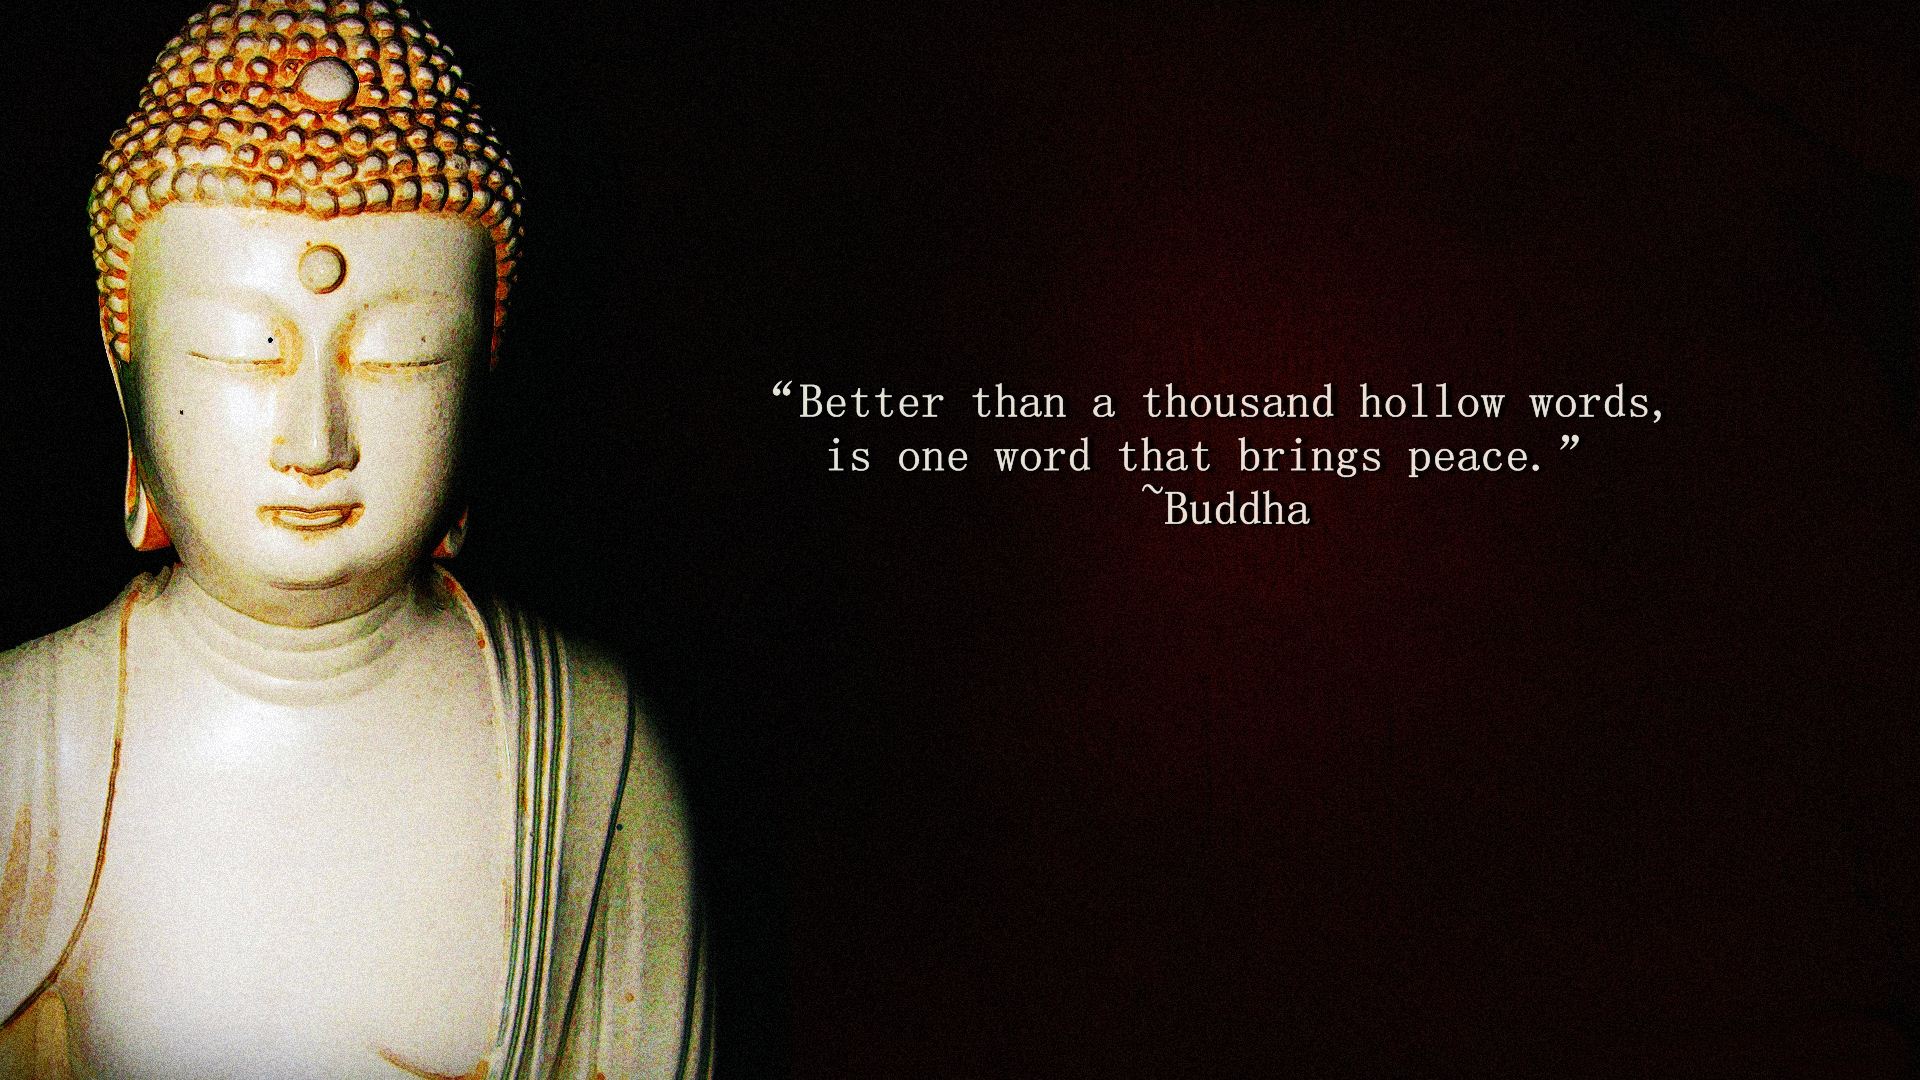 Buddha Quotes Pc Wallpaper - Karma Dalai Lama Quotes - 1920x1080 Wallpaper  